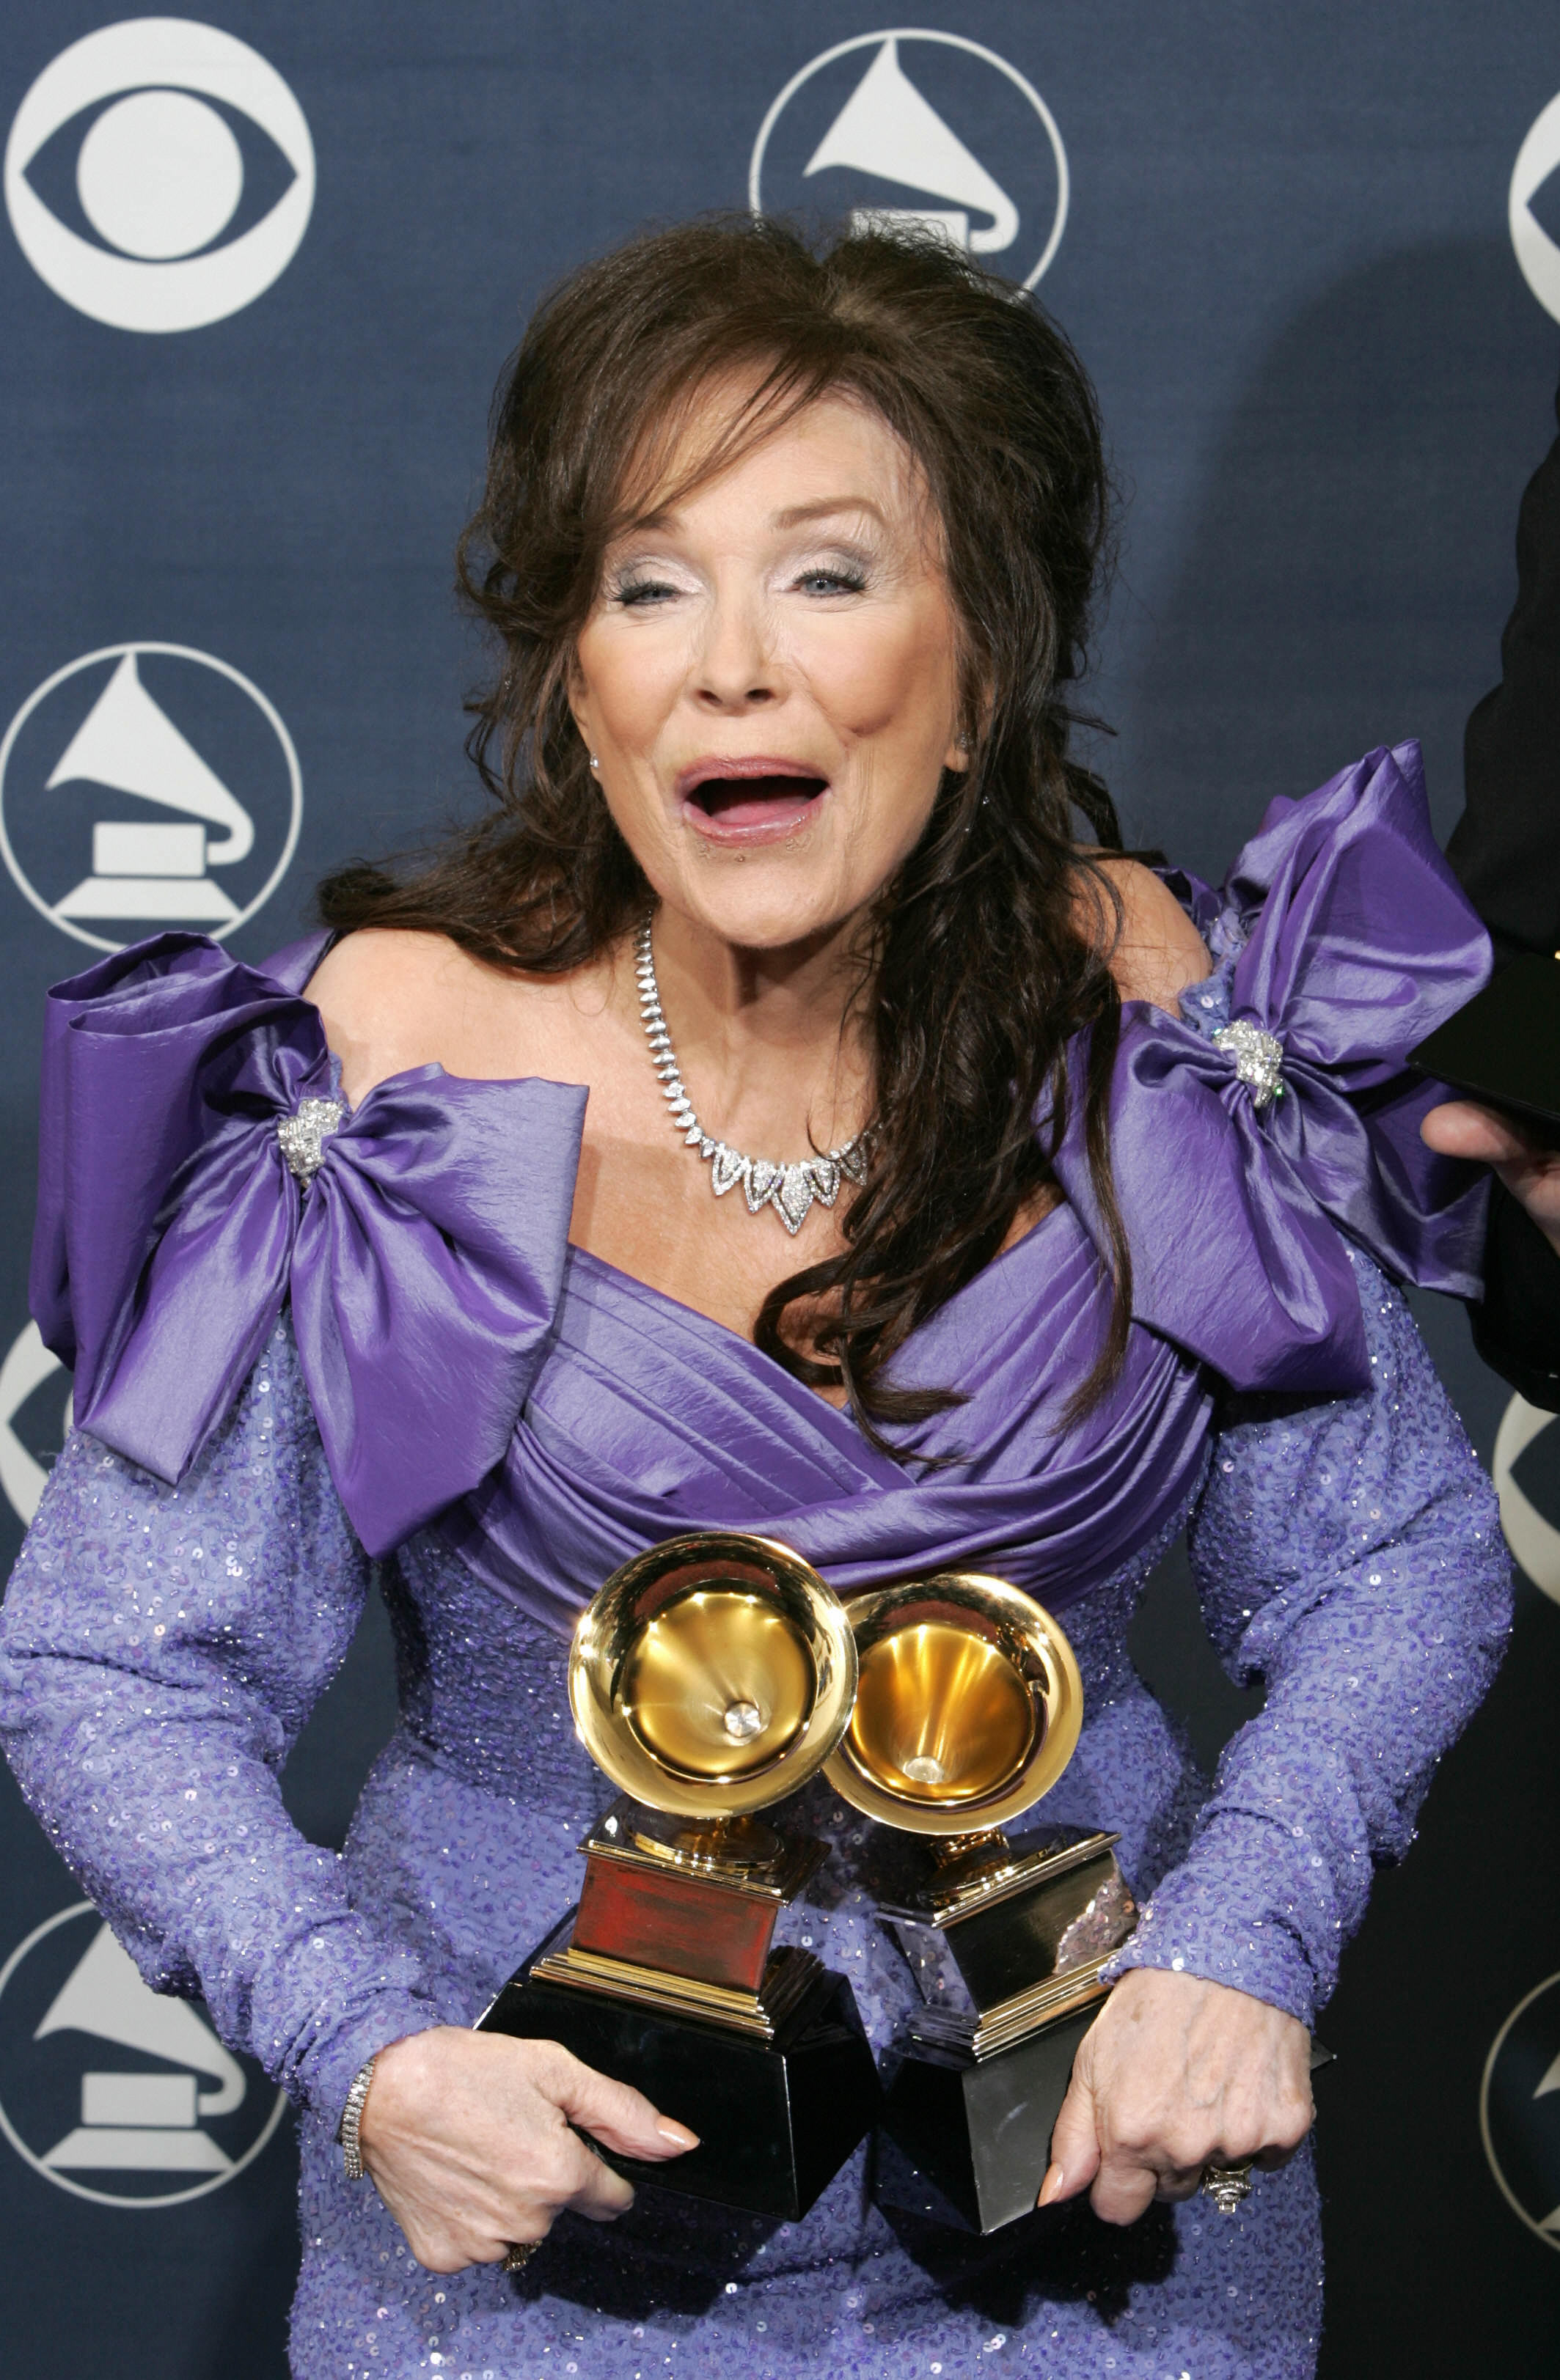 Loretta Lynn pose avec les prix qu'elle a remportés lors de la cérémonie des Grammys à Los Angeles le 13 février 2005. | Source : Getty Images